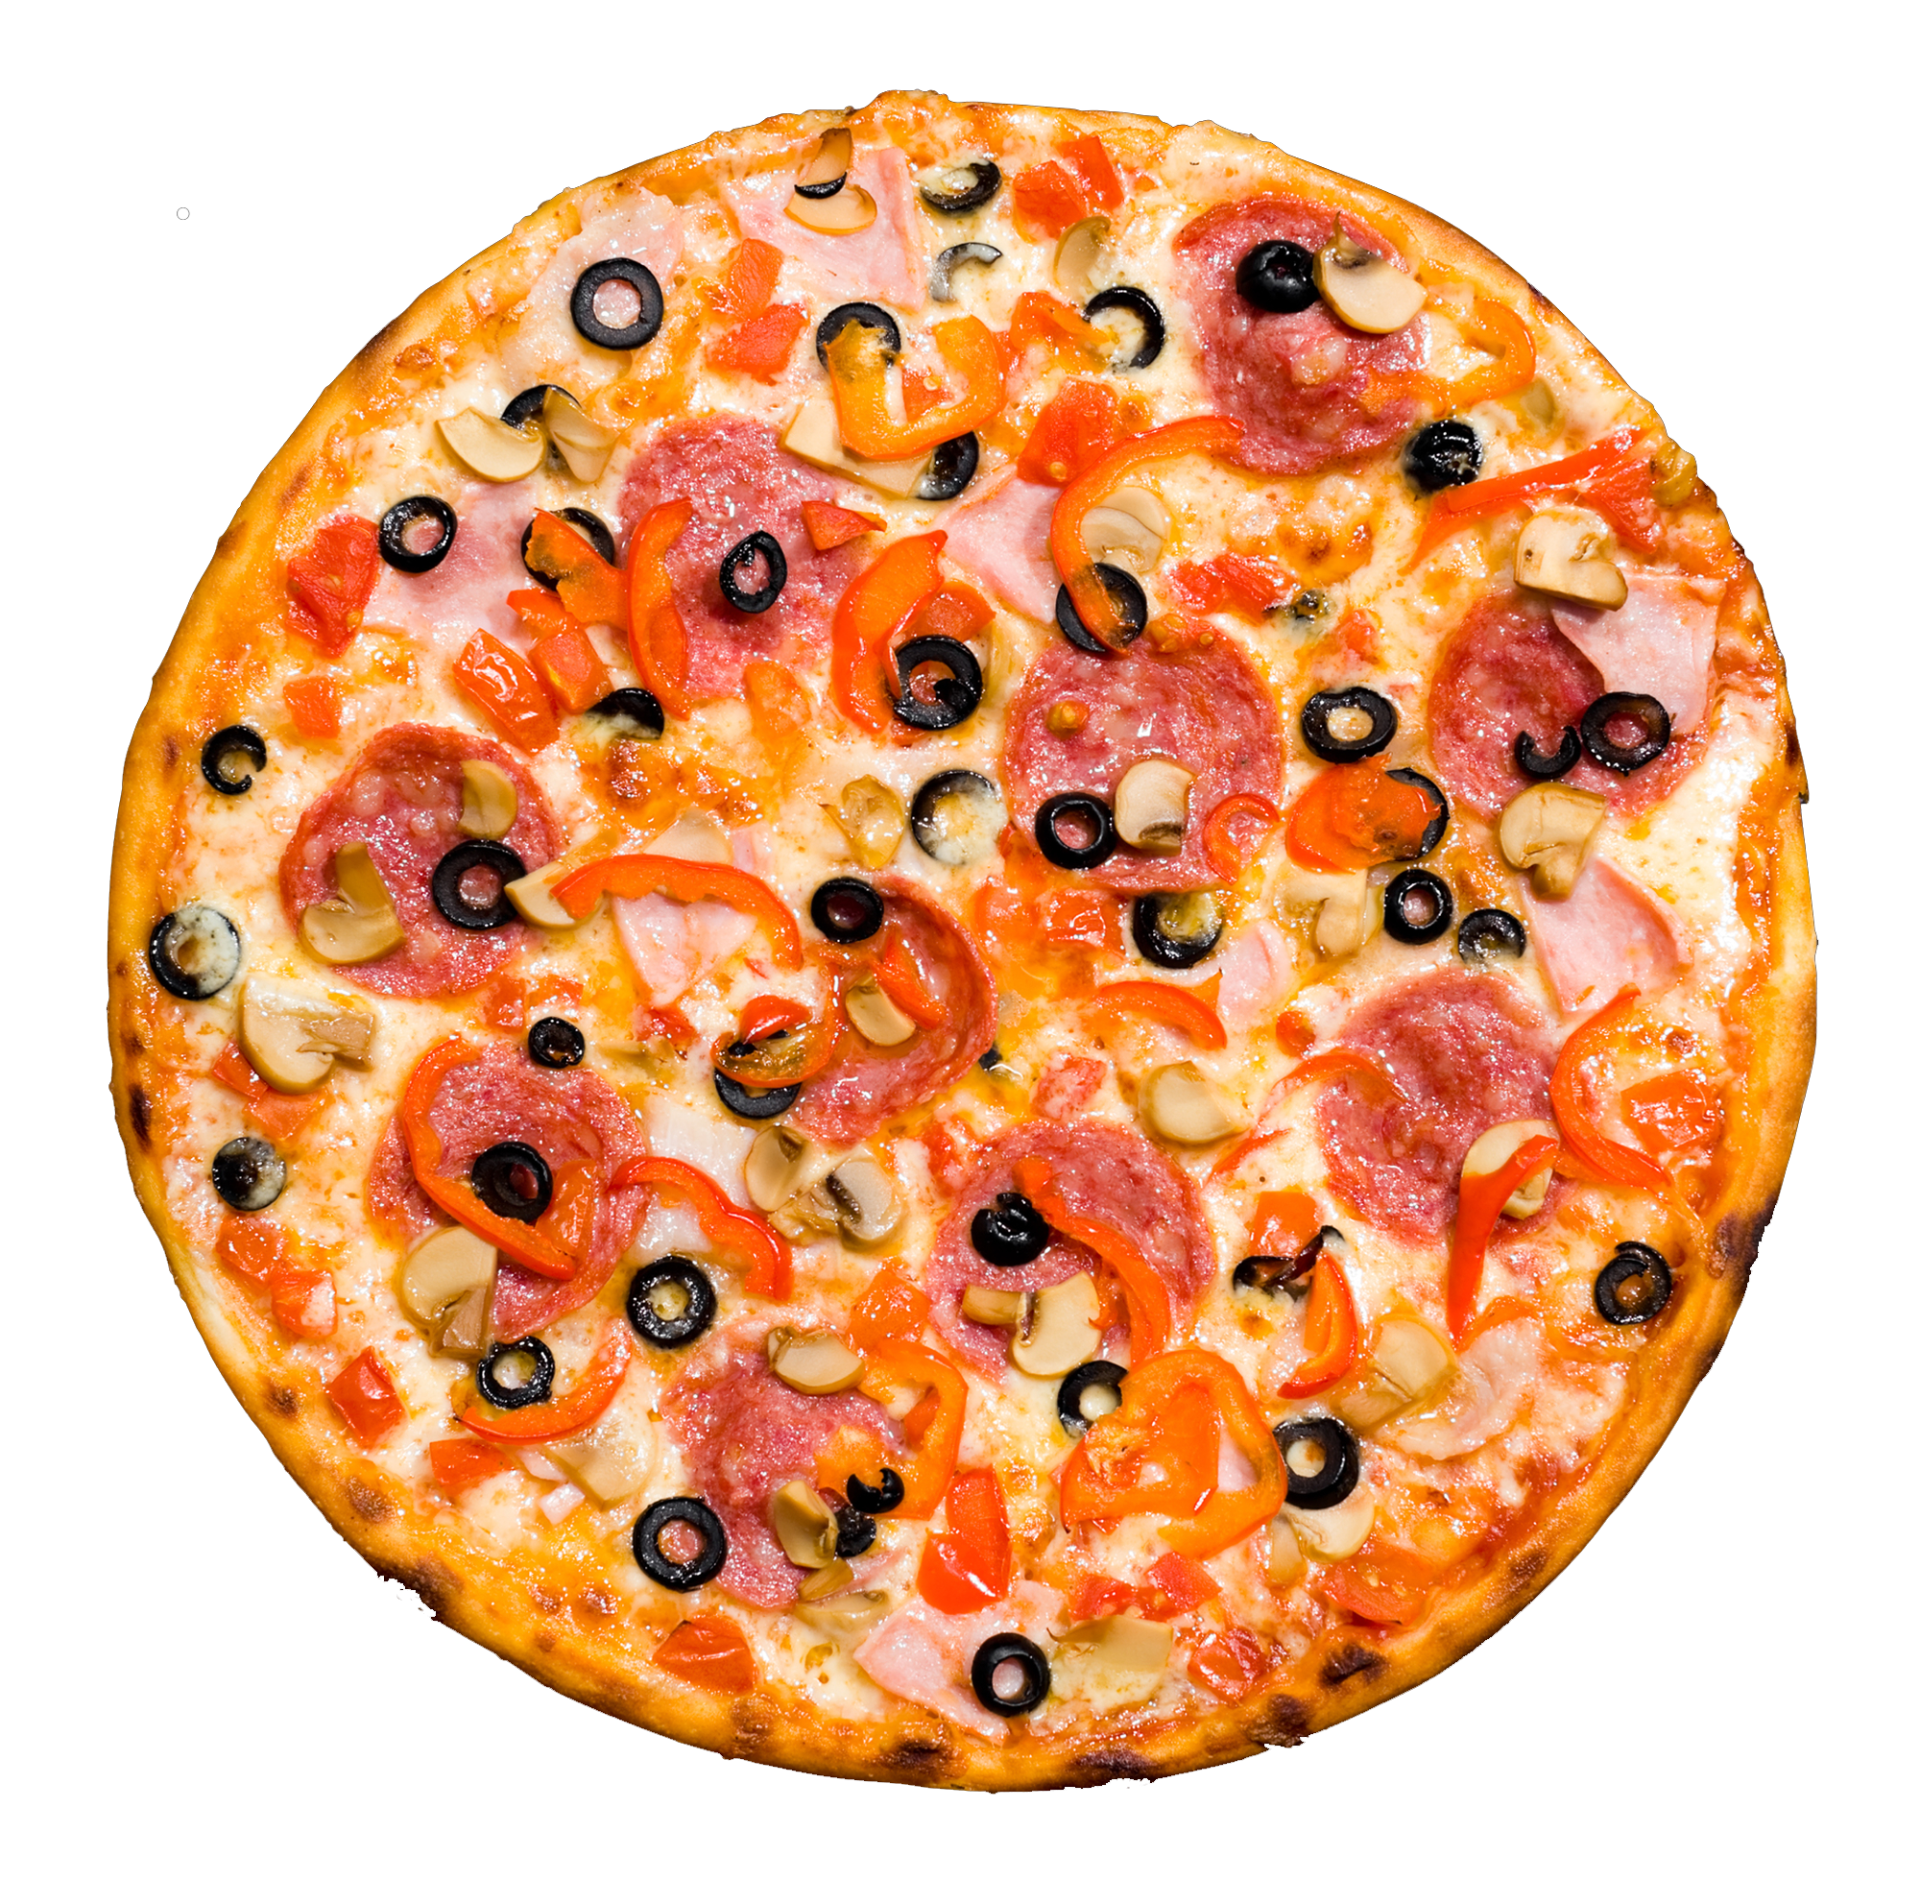 Round Pizza